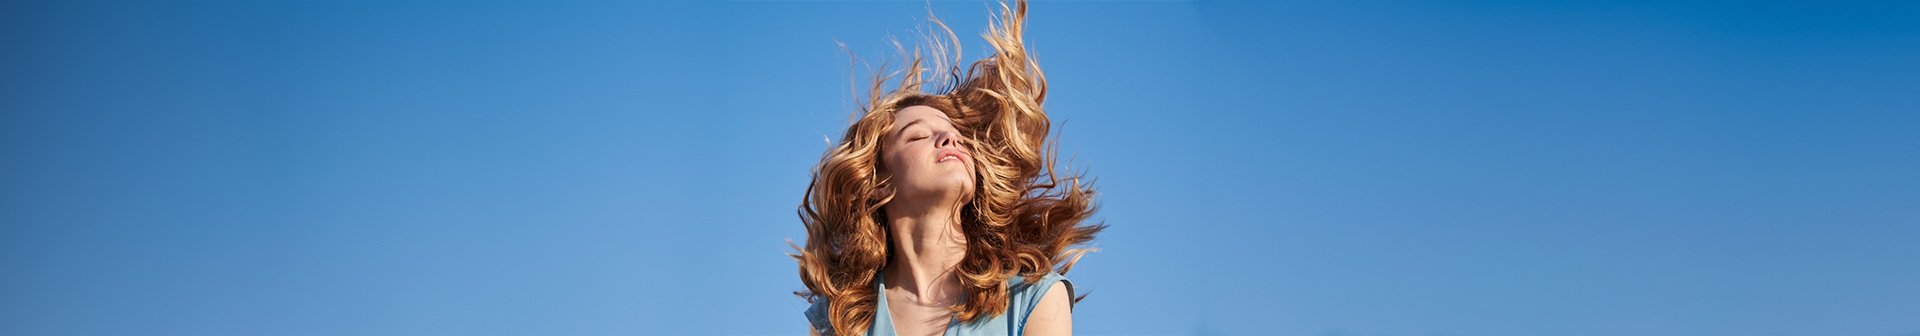 Eine junge Frau mit wallendem blonden Haaren lässt sich die Sonne auf ihr Gesicht scheinen